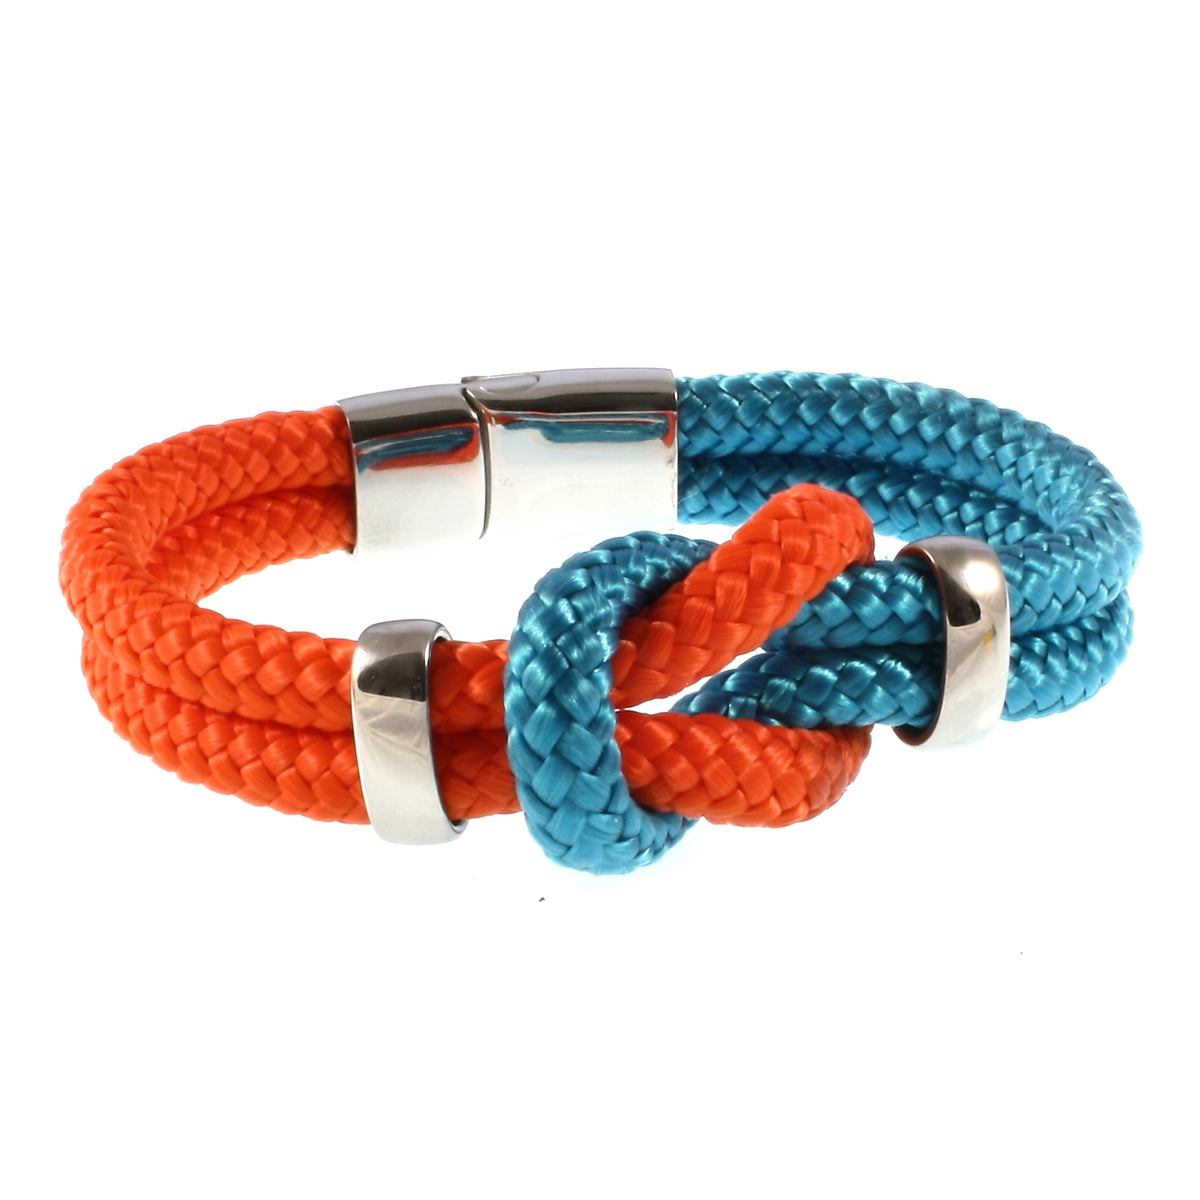 Damen-Segeltau-armband-pure-blau-orange-silber-geflochten-Edelstahlverschluss-vorn-wavepirate-shop-st